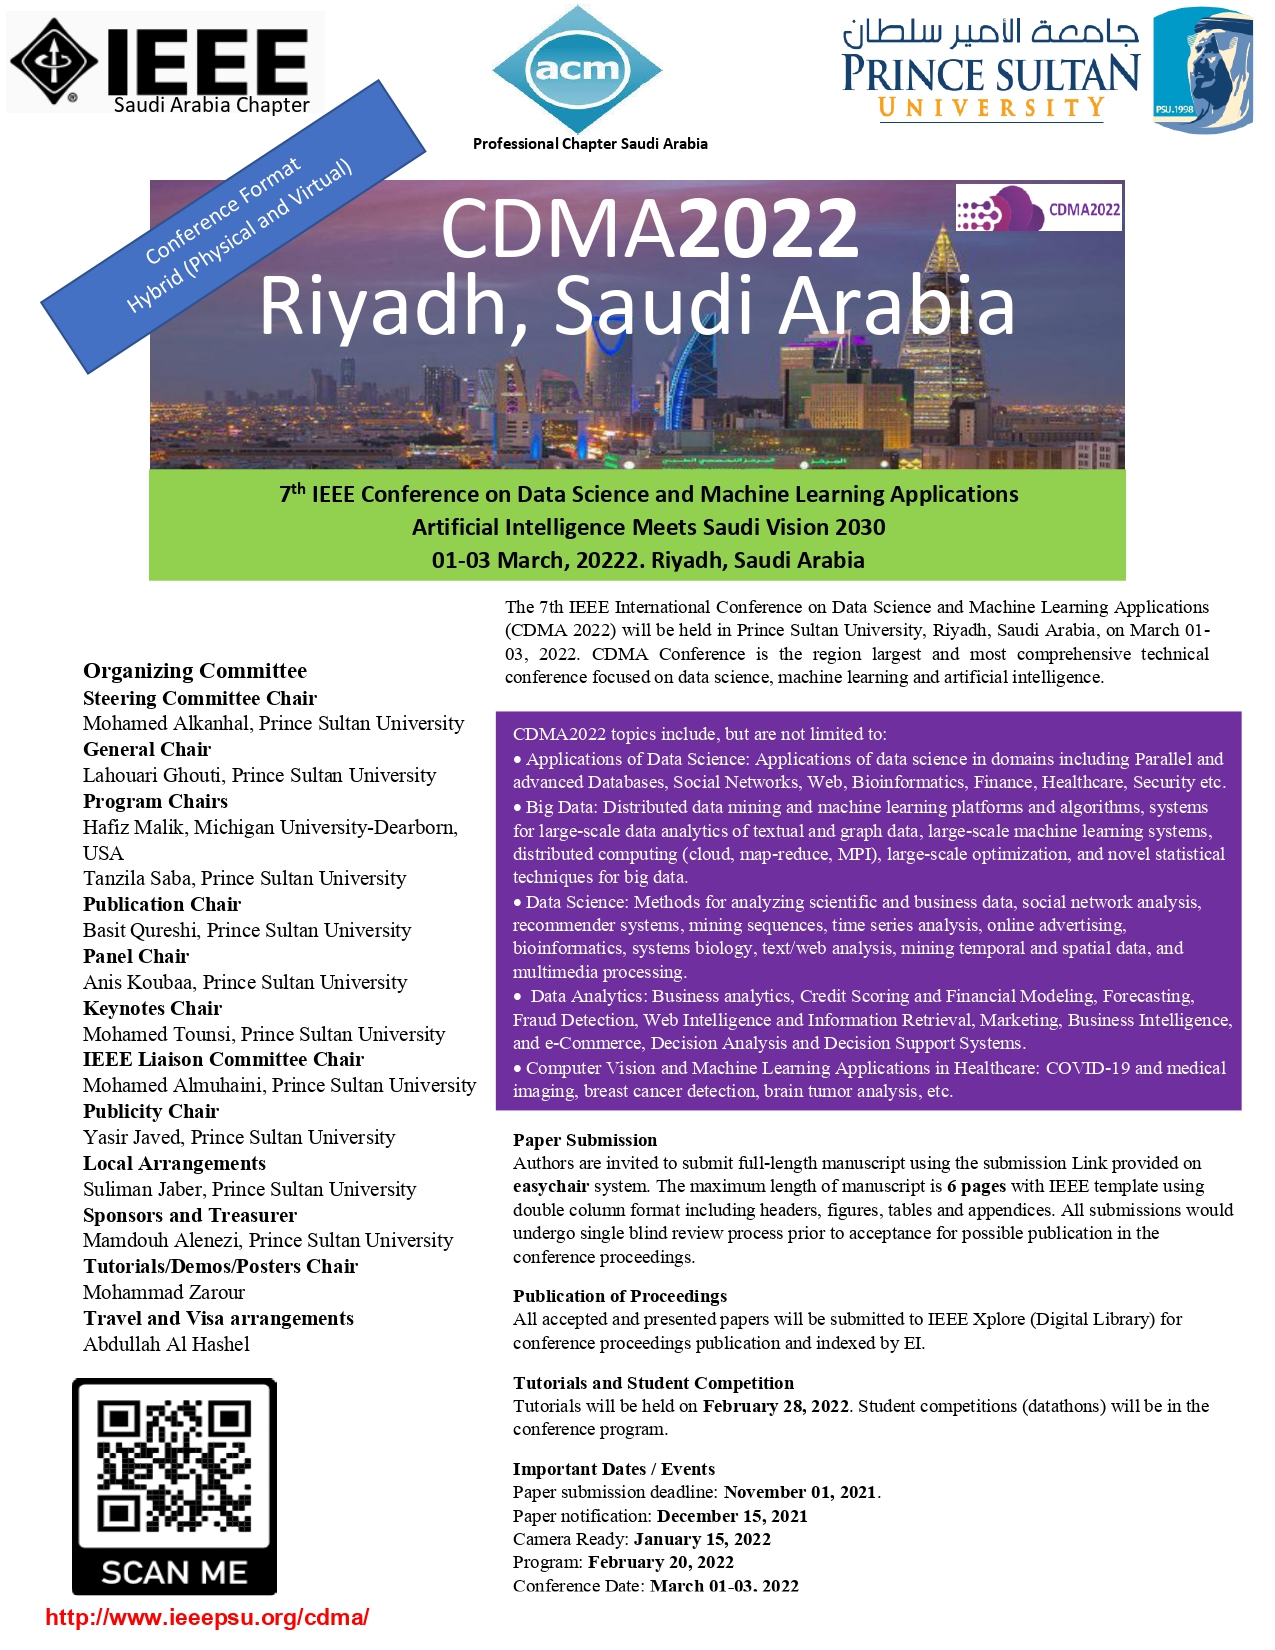 CDMA 2022